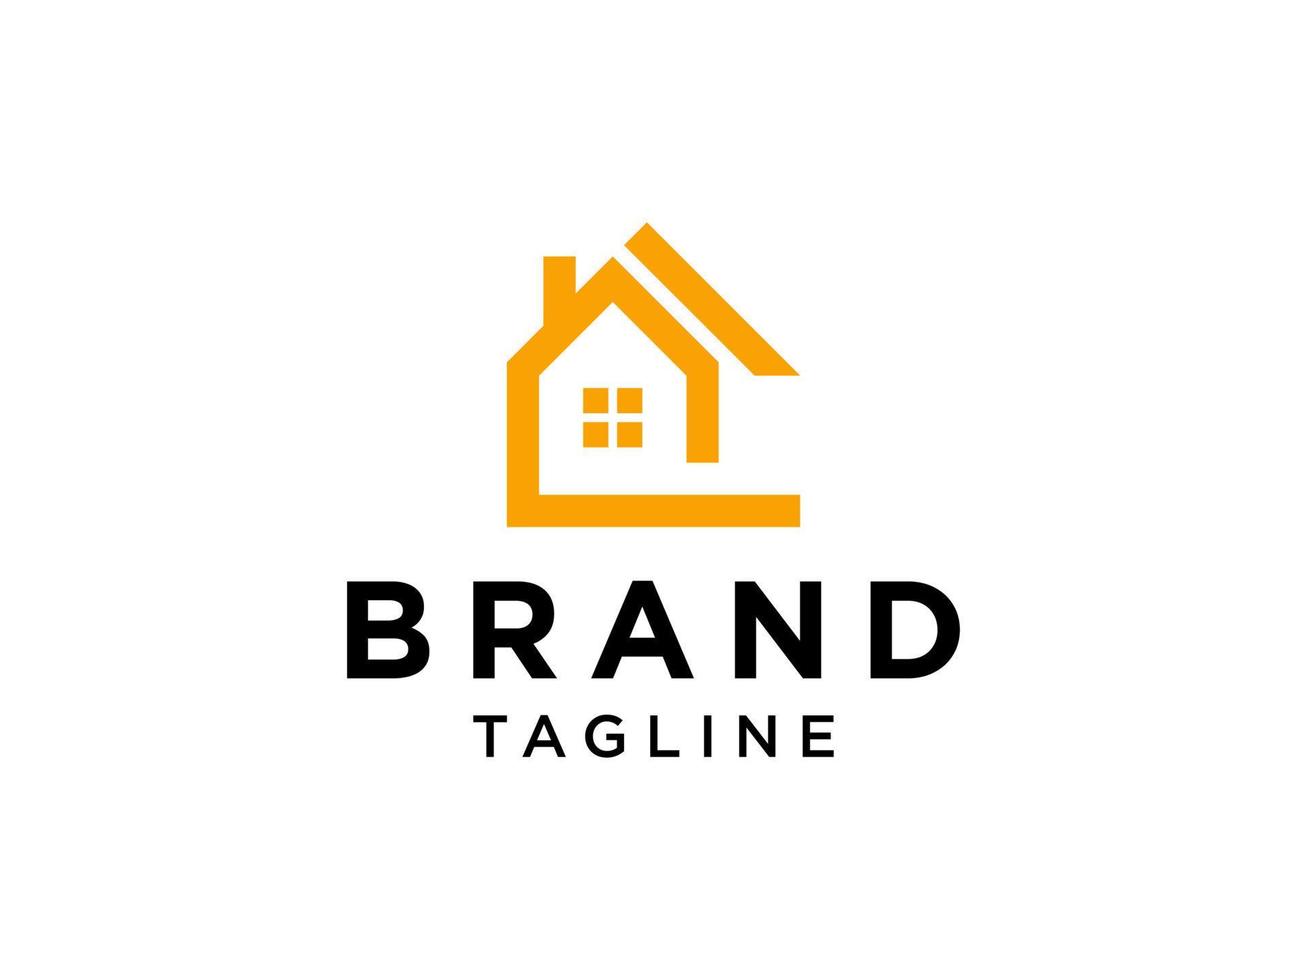 fastighetslogotyp. orange hus symbol geometrisk linjär stil isolerad på vit bakgrund. användbar för konstruktion arkitektur byggnad logotyp designmall element. vektor